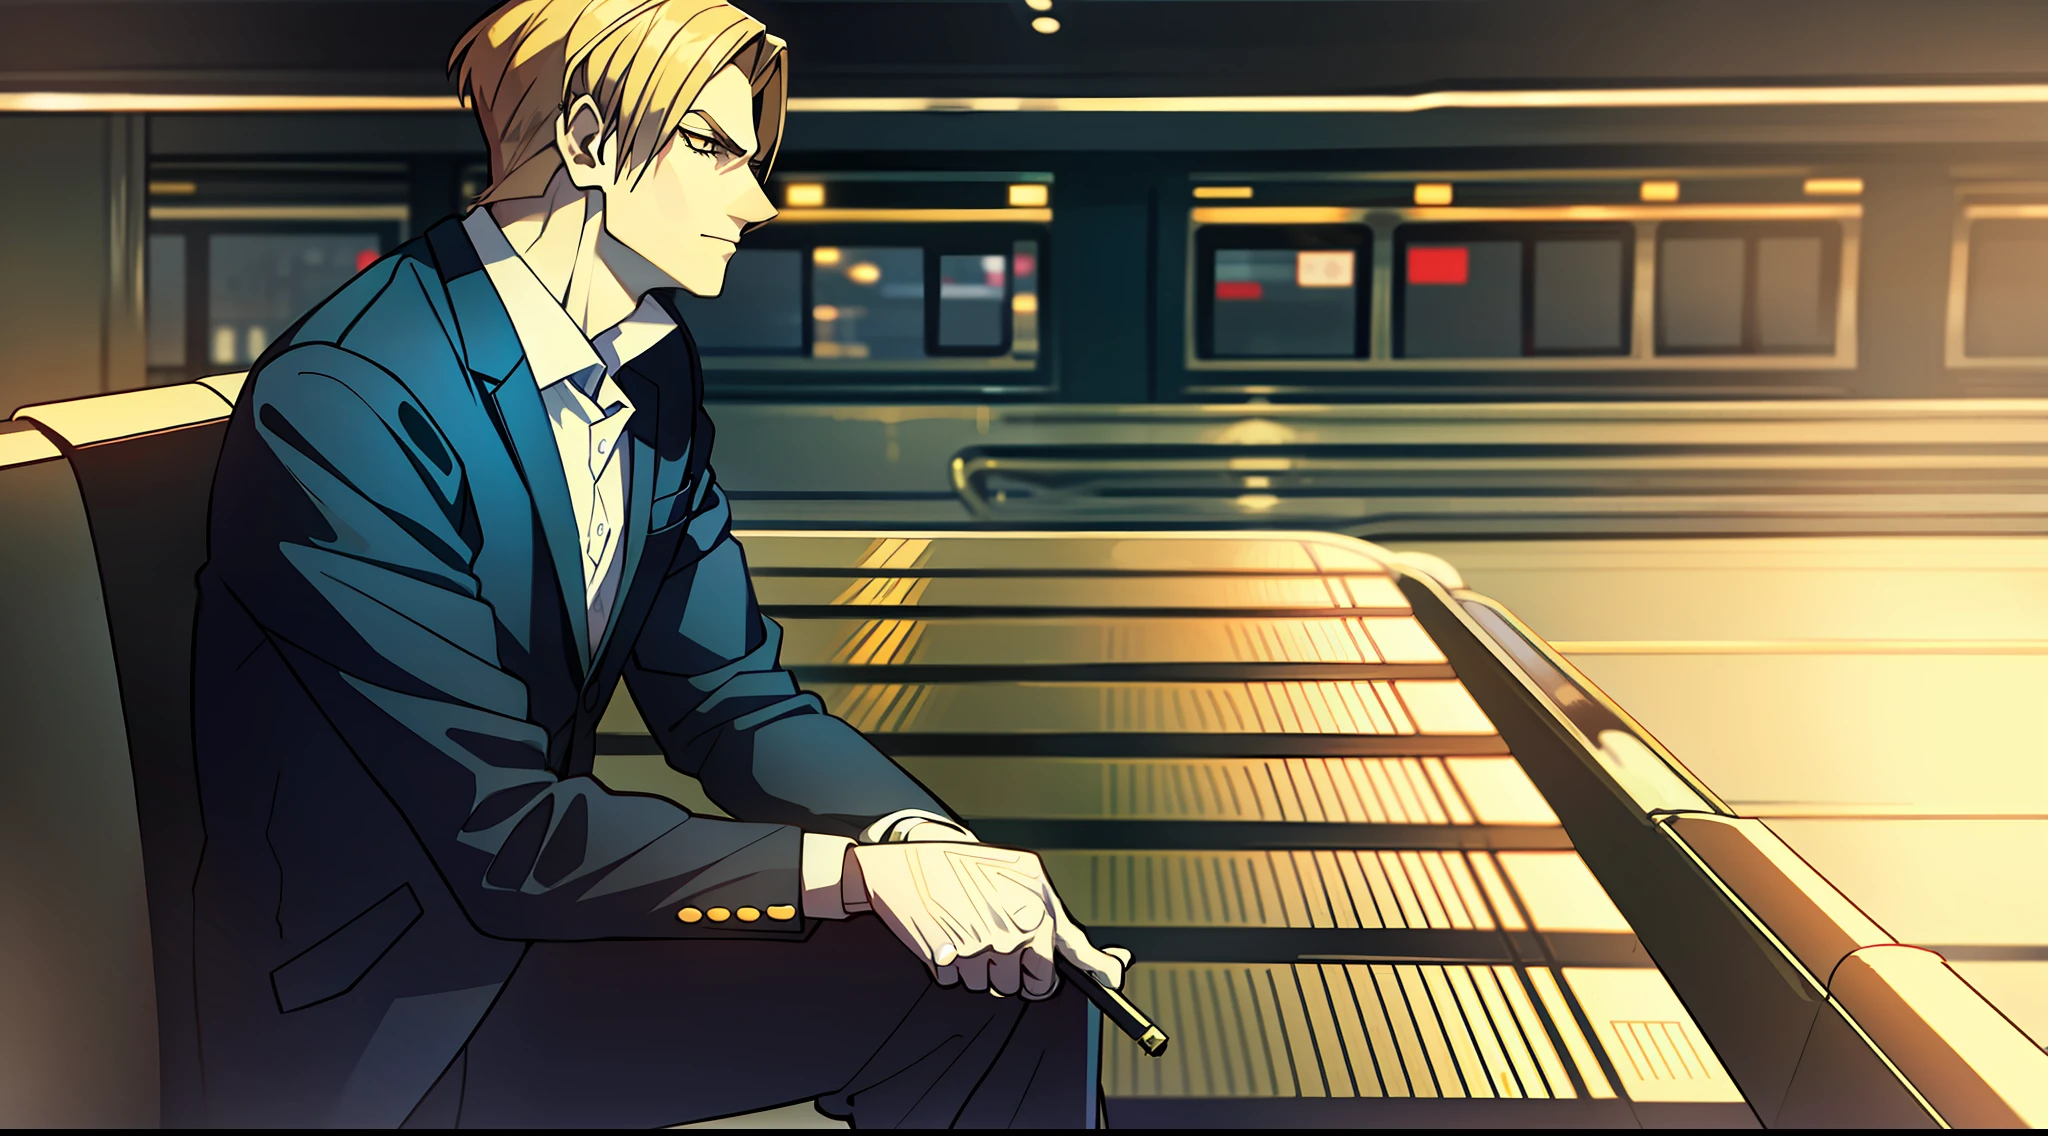 "TEIL, trägt einen Anzug und raucht eine Zigarette, mit gekreuzten Beinen sitzen, ein hübsches Gesicht in einer schwarz-weißen Kulisse am Bahnhof."